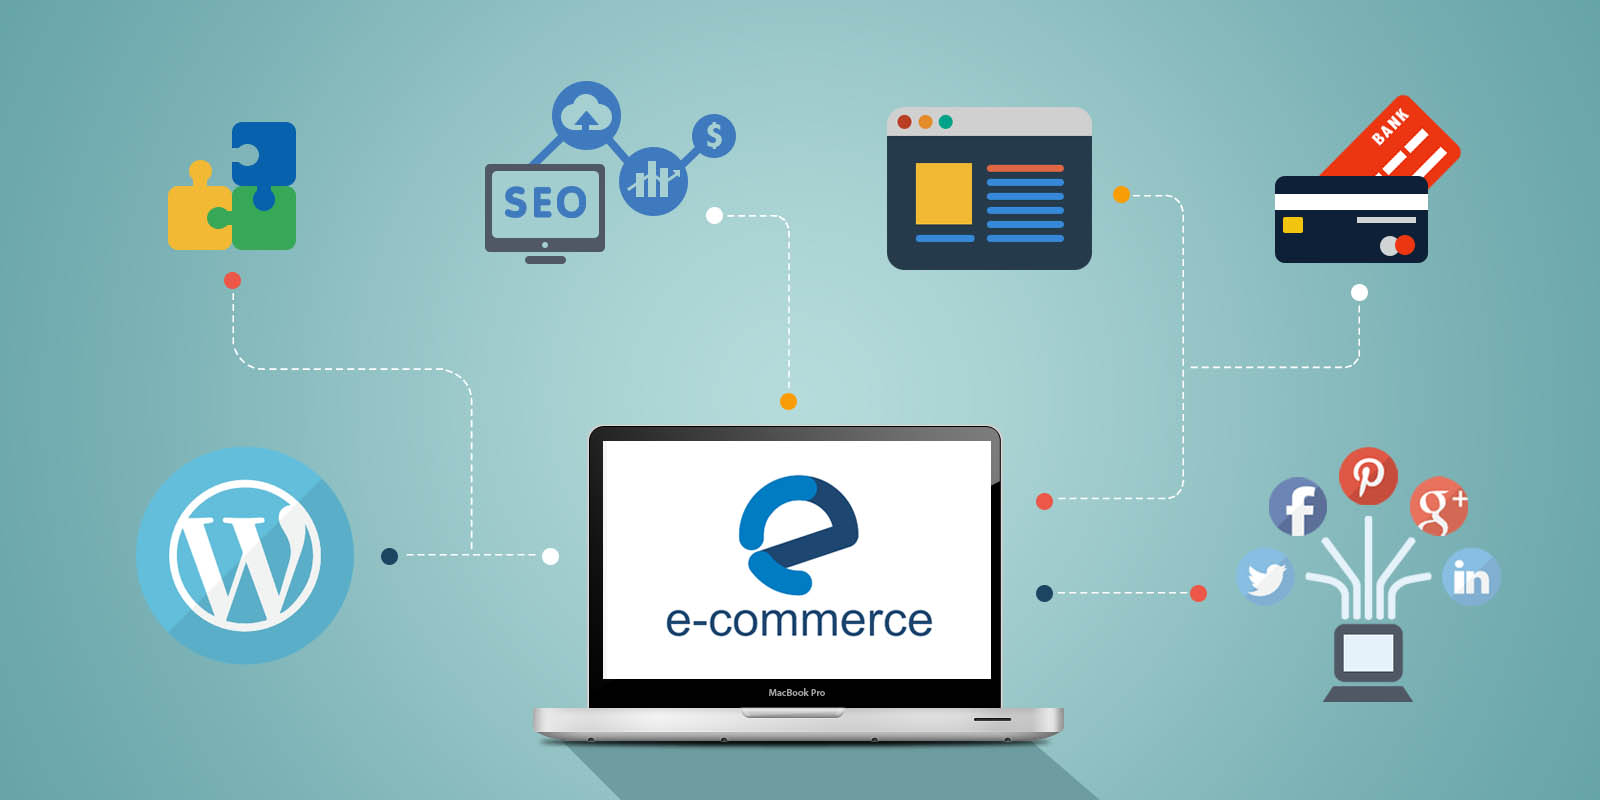 7 Best SEO Strategies for E-commerce Website